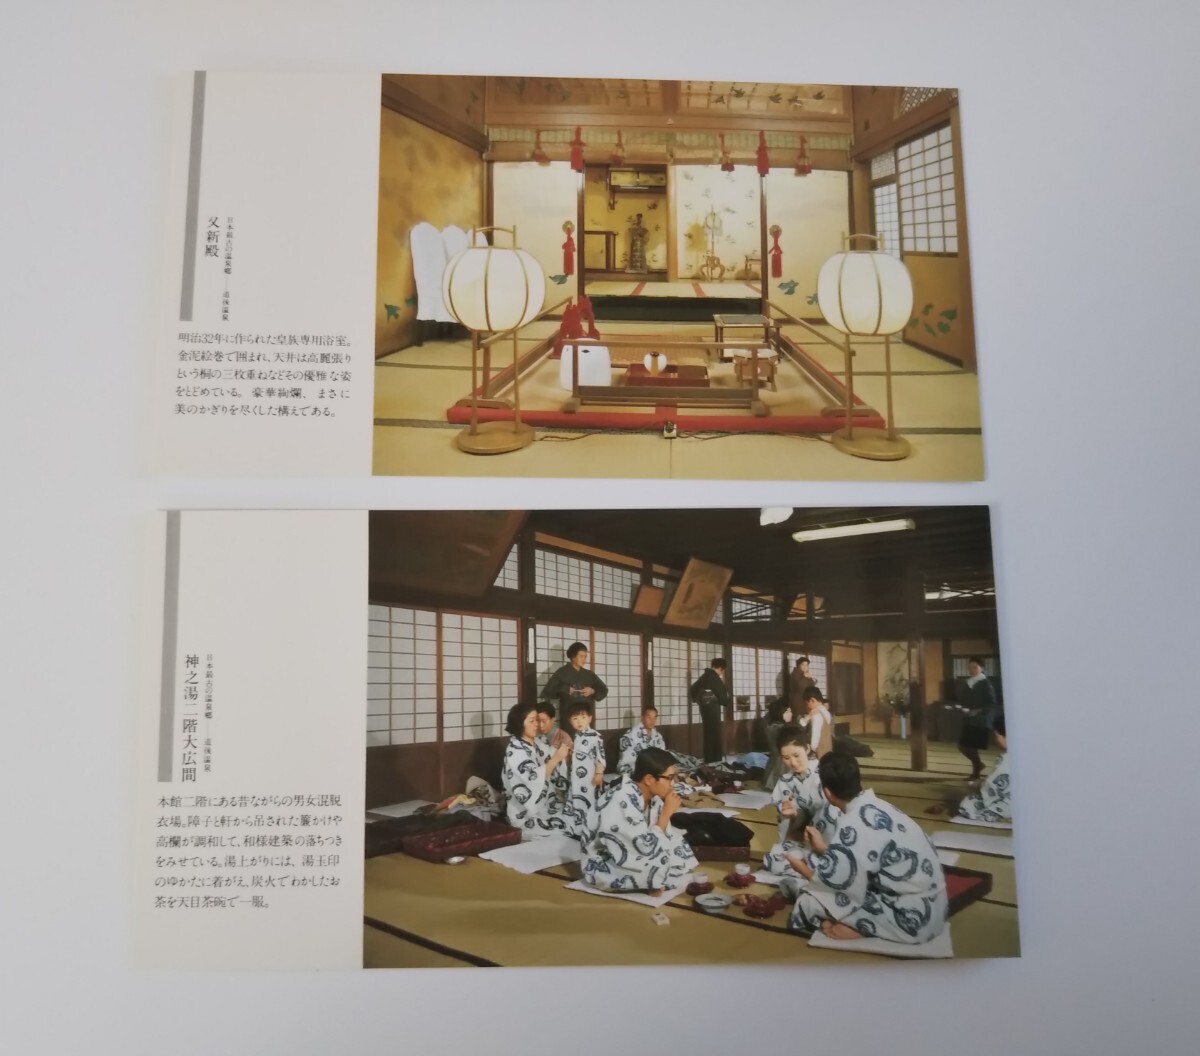  Япония самый старый. горячие источники . дорога после горячие источники открытка Showa Retro открытка с видом 